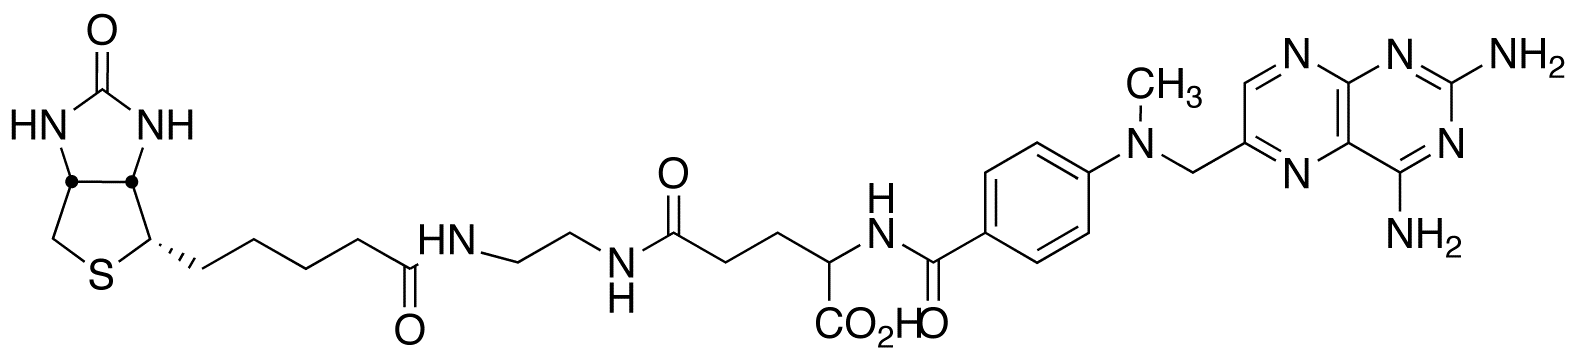 Methotrexyl-N’-biotinylethylenediamine